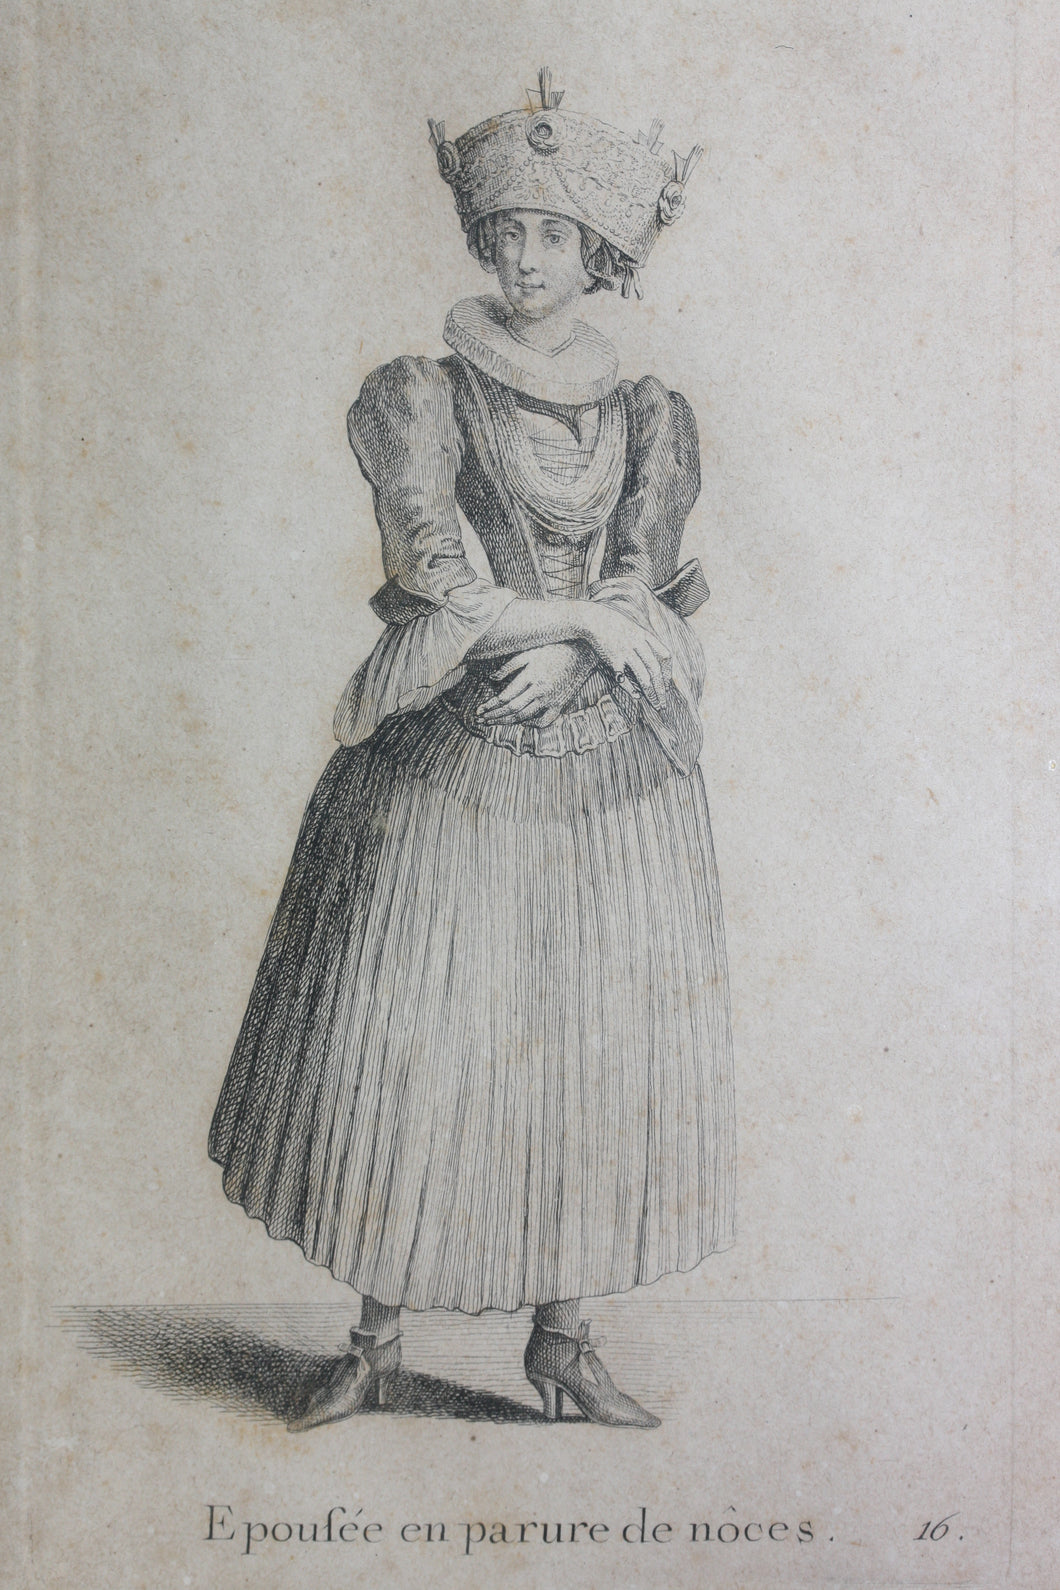 Johann Rudolf Huber, after. Épousé en parure de noces. Engraved by Johann Rudolf Schellenberg. Basel, 1798.